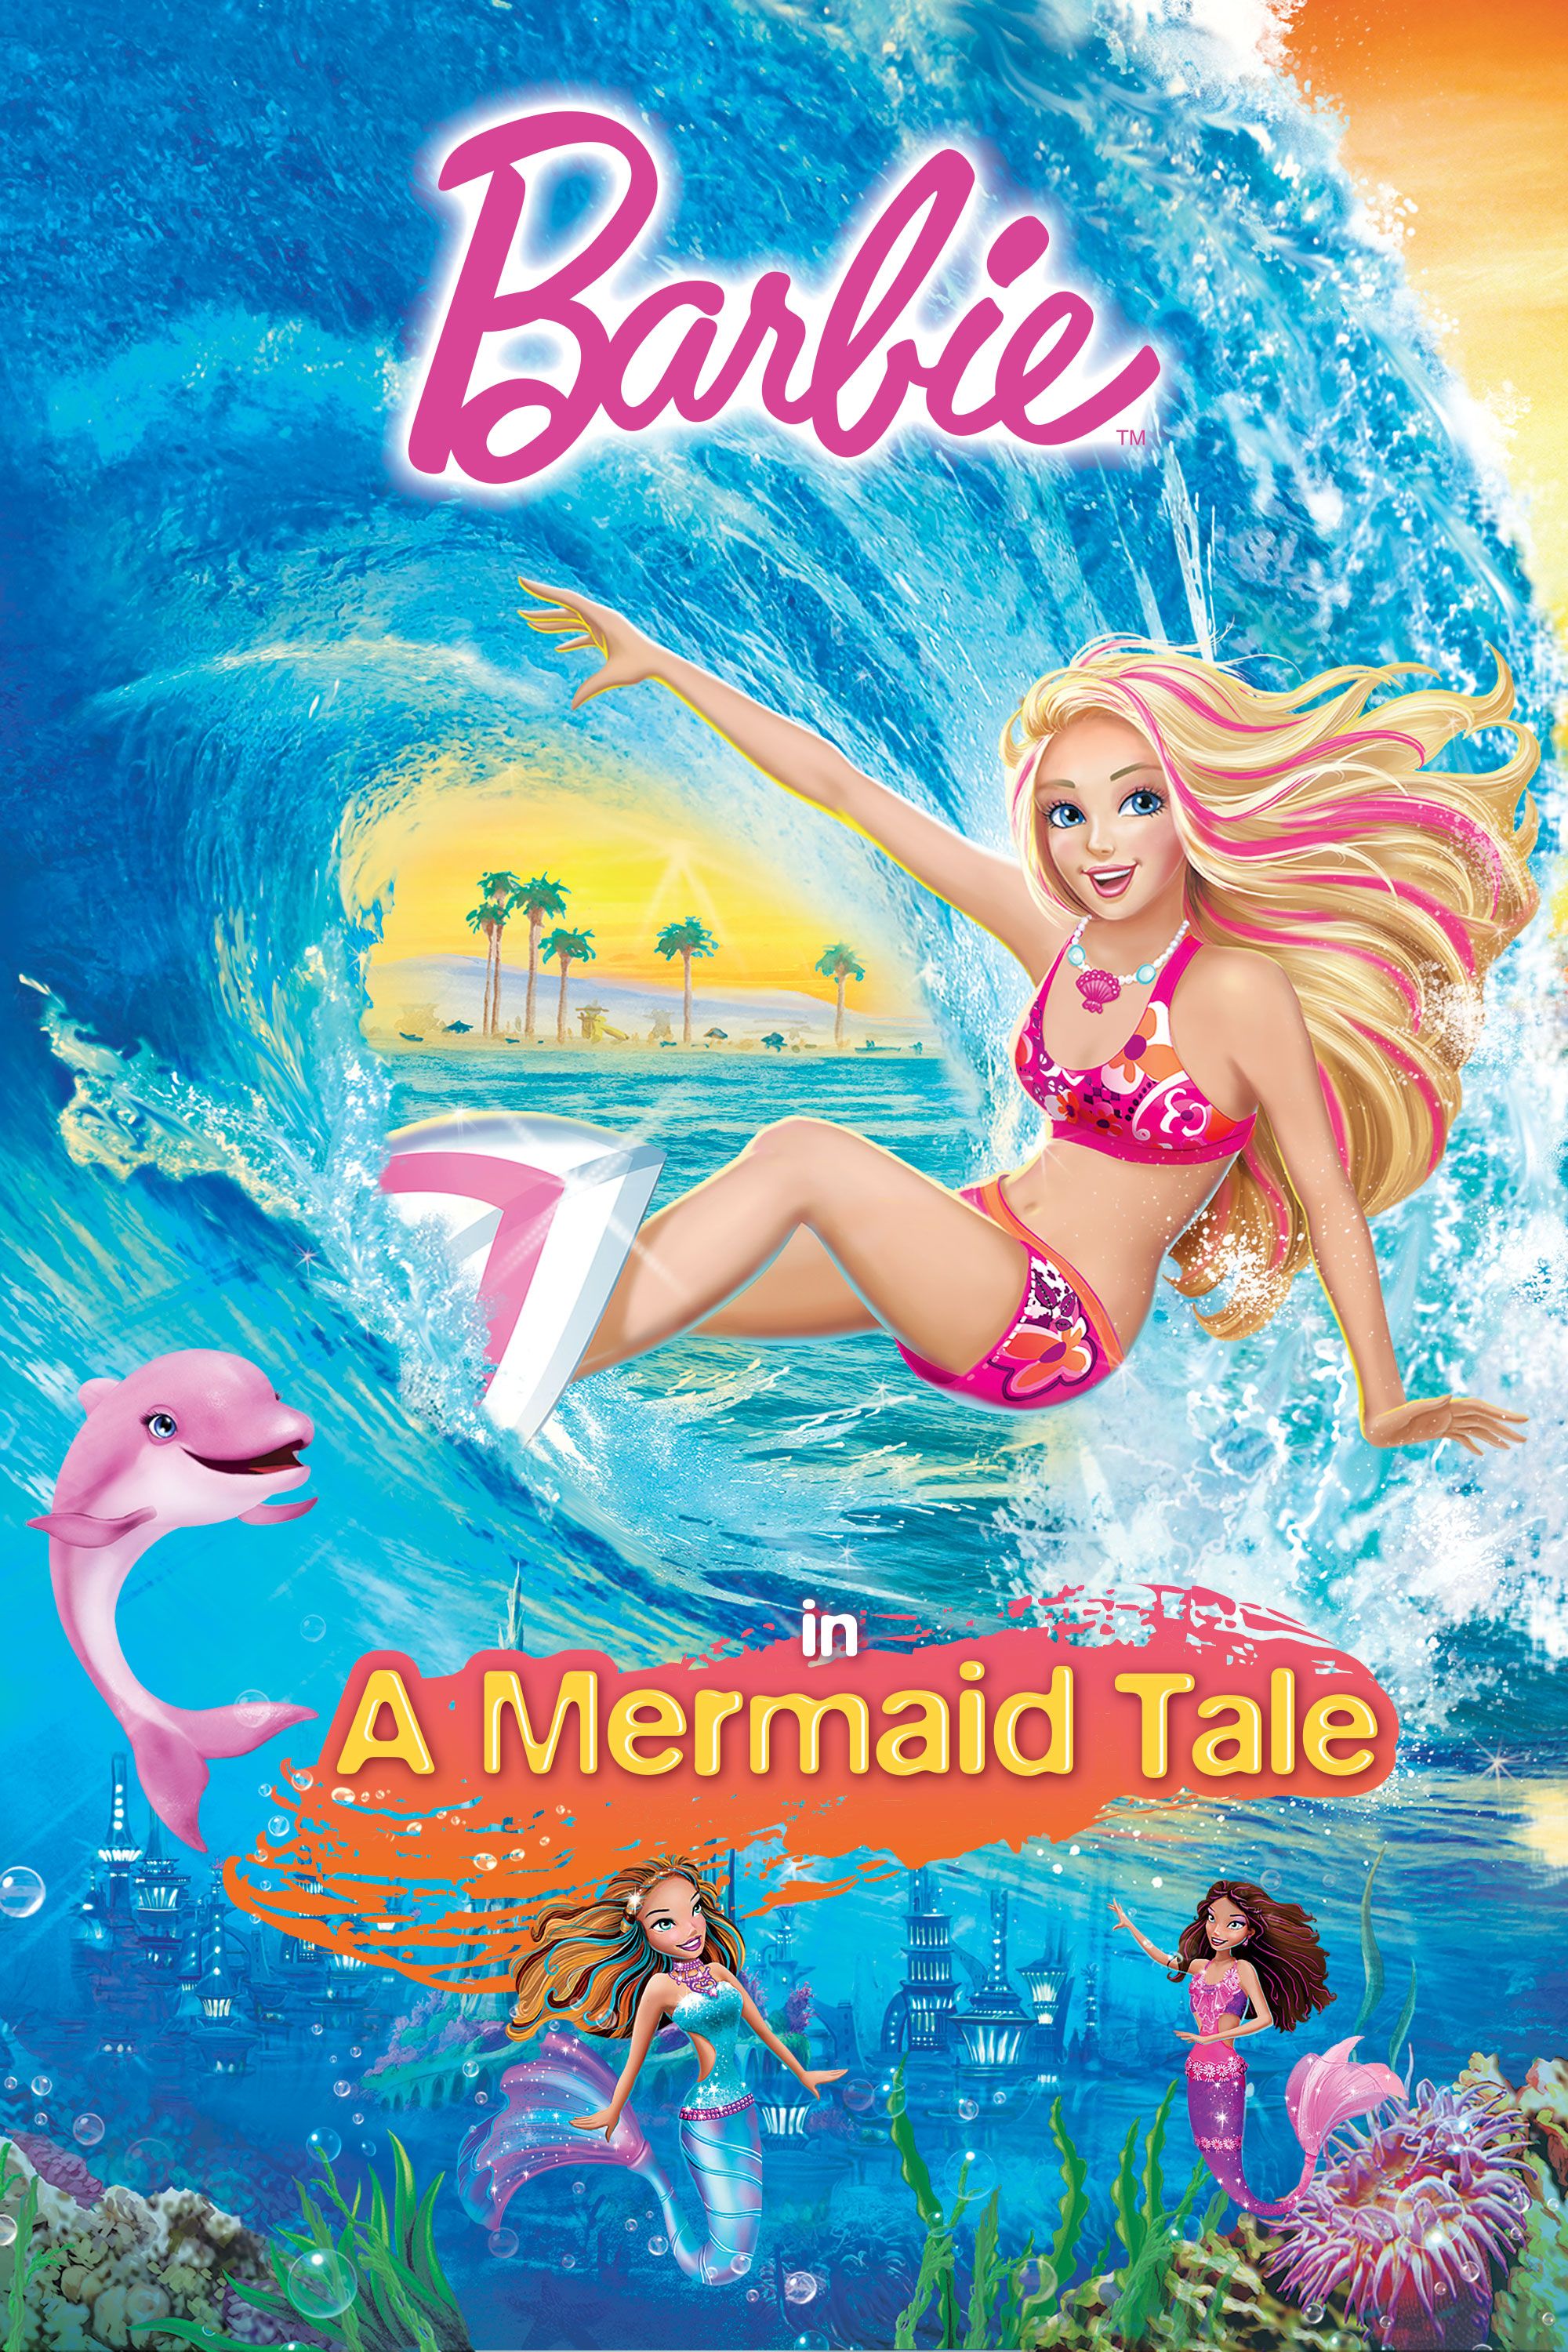 Barbie videos mermaid Barbie in